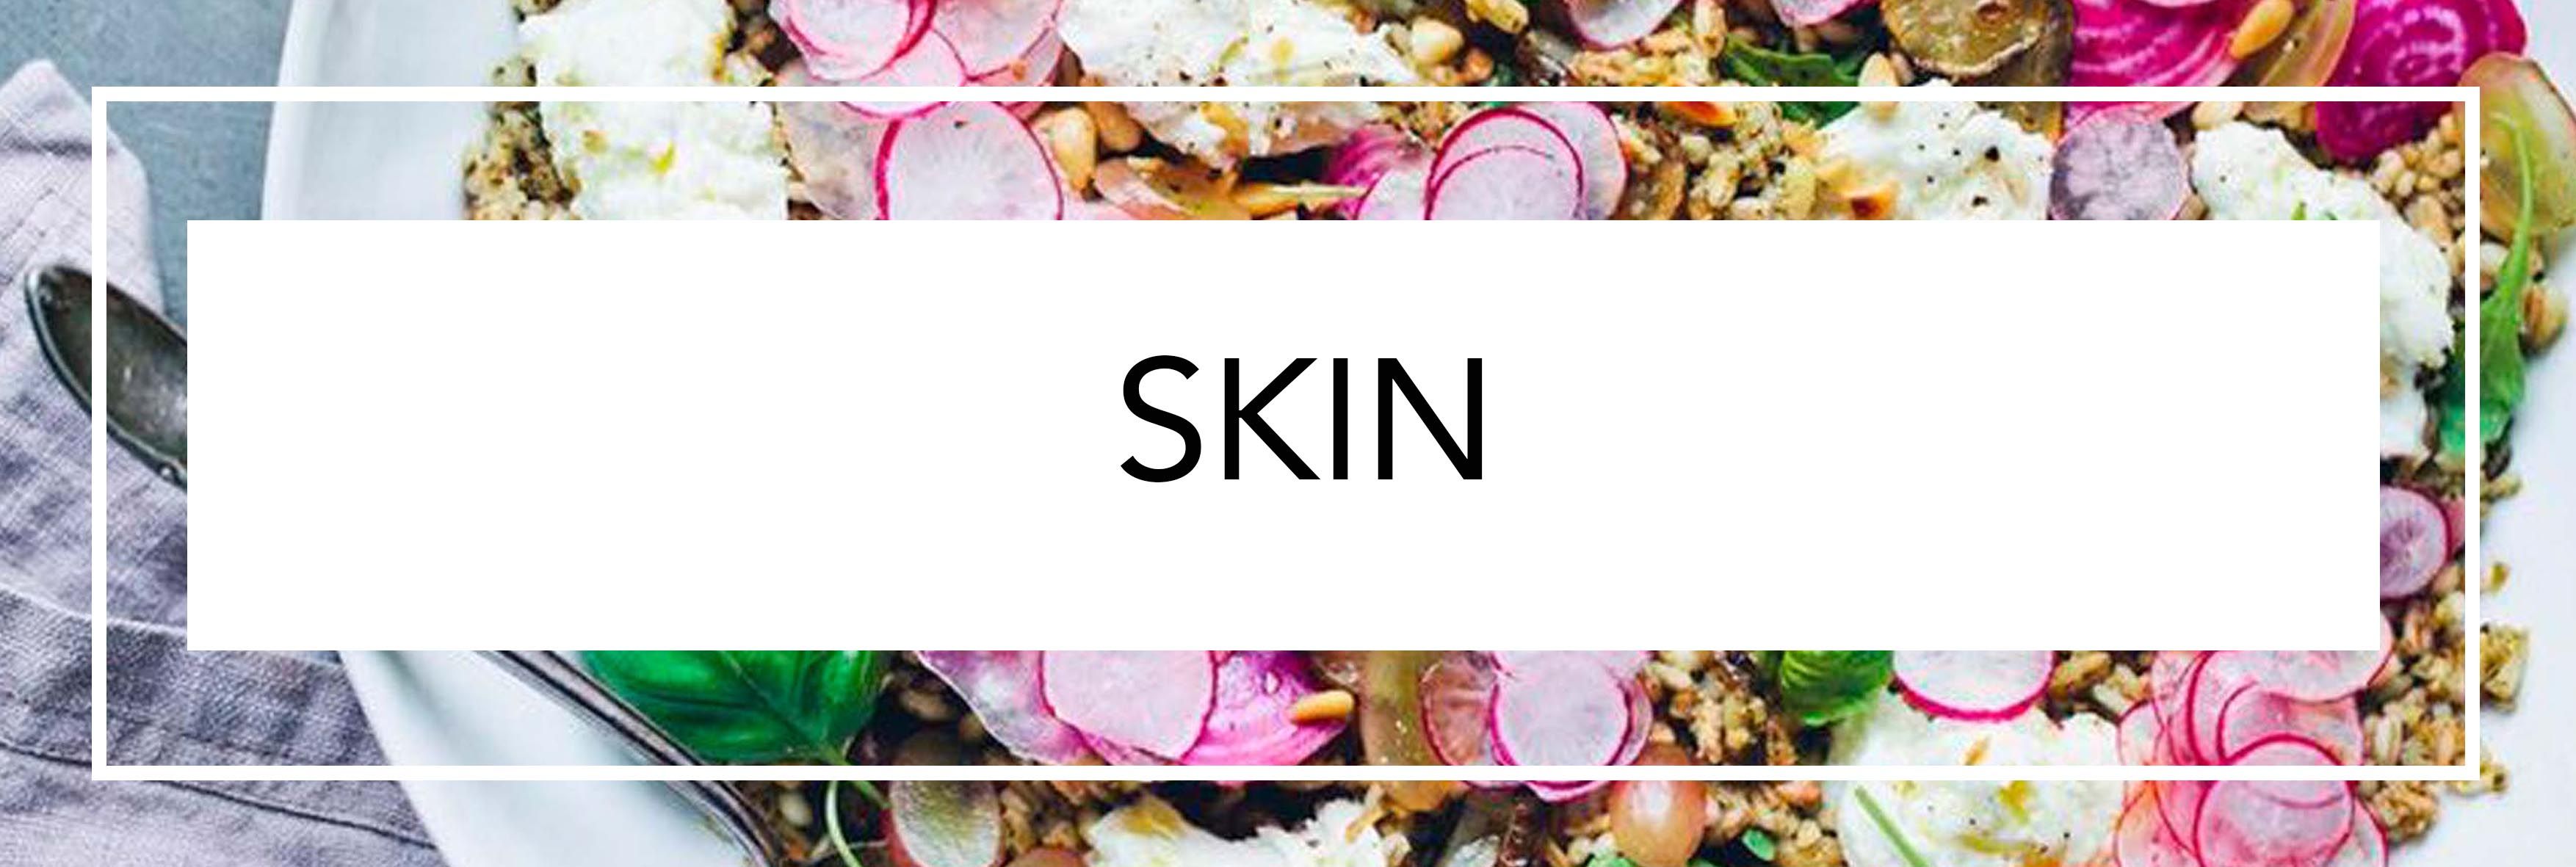 Exclusive dari Martina Fink: Sudah Tahukah Kamu Tren Terbaru Beauty Foods yang Akan Mengubah Hidupmu?